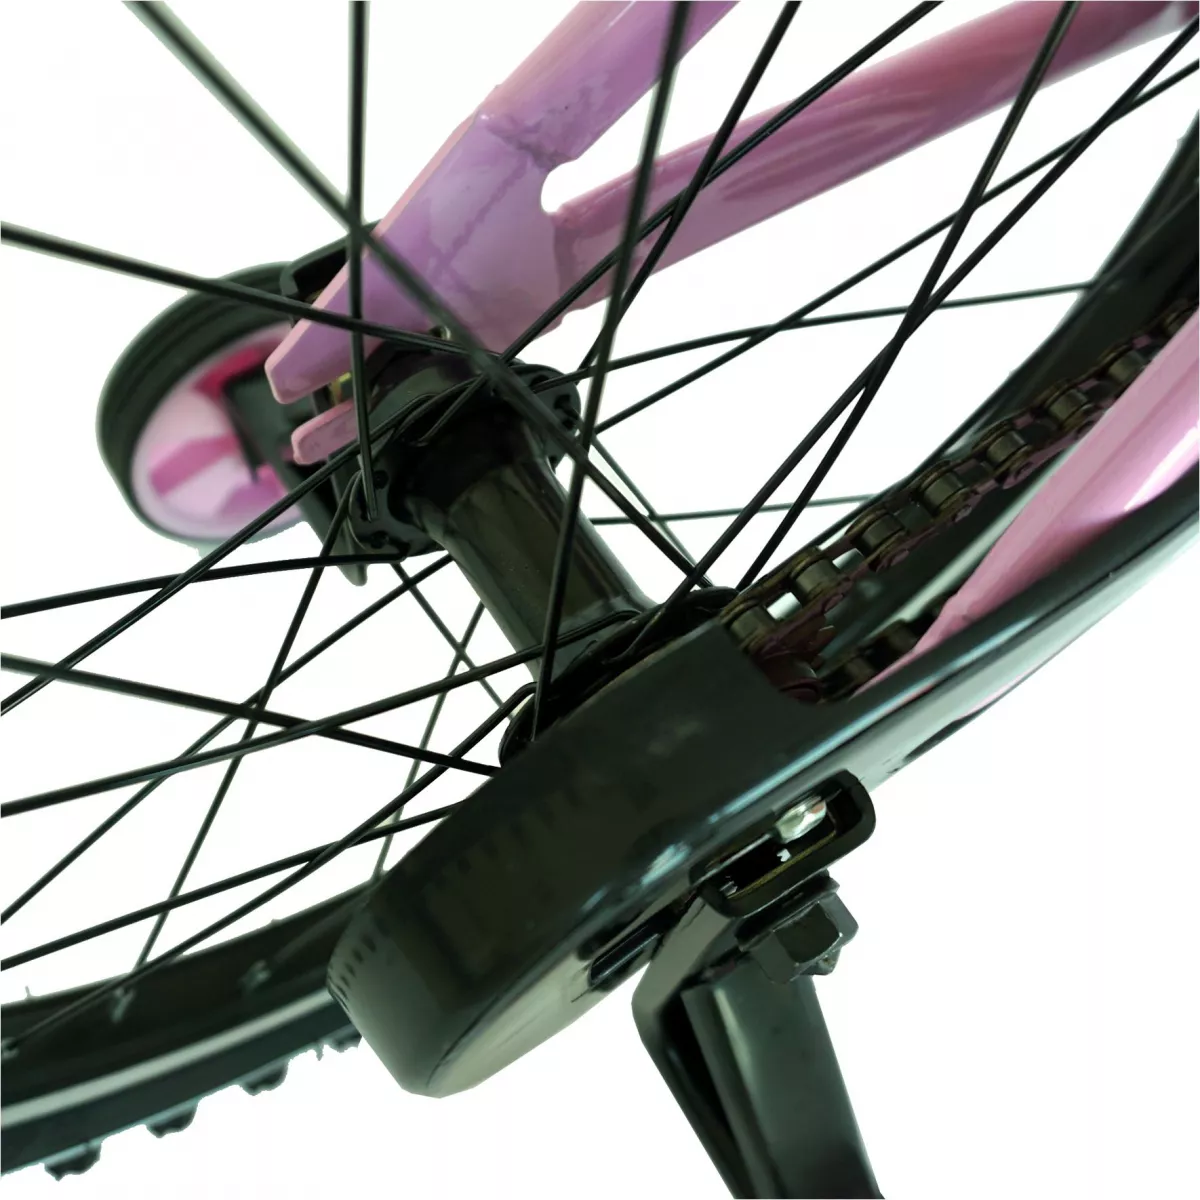 Bicicleta fete CARPAT C1402C, roata 14", V-Brake, roti ajutatoare, 3-5 ani, roz/alb - RESIGILATA